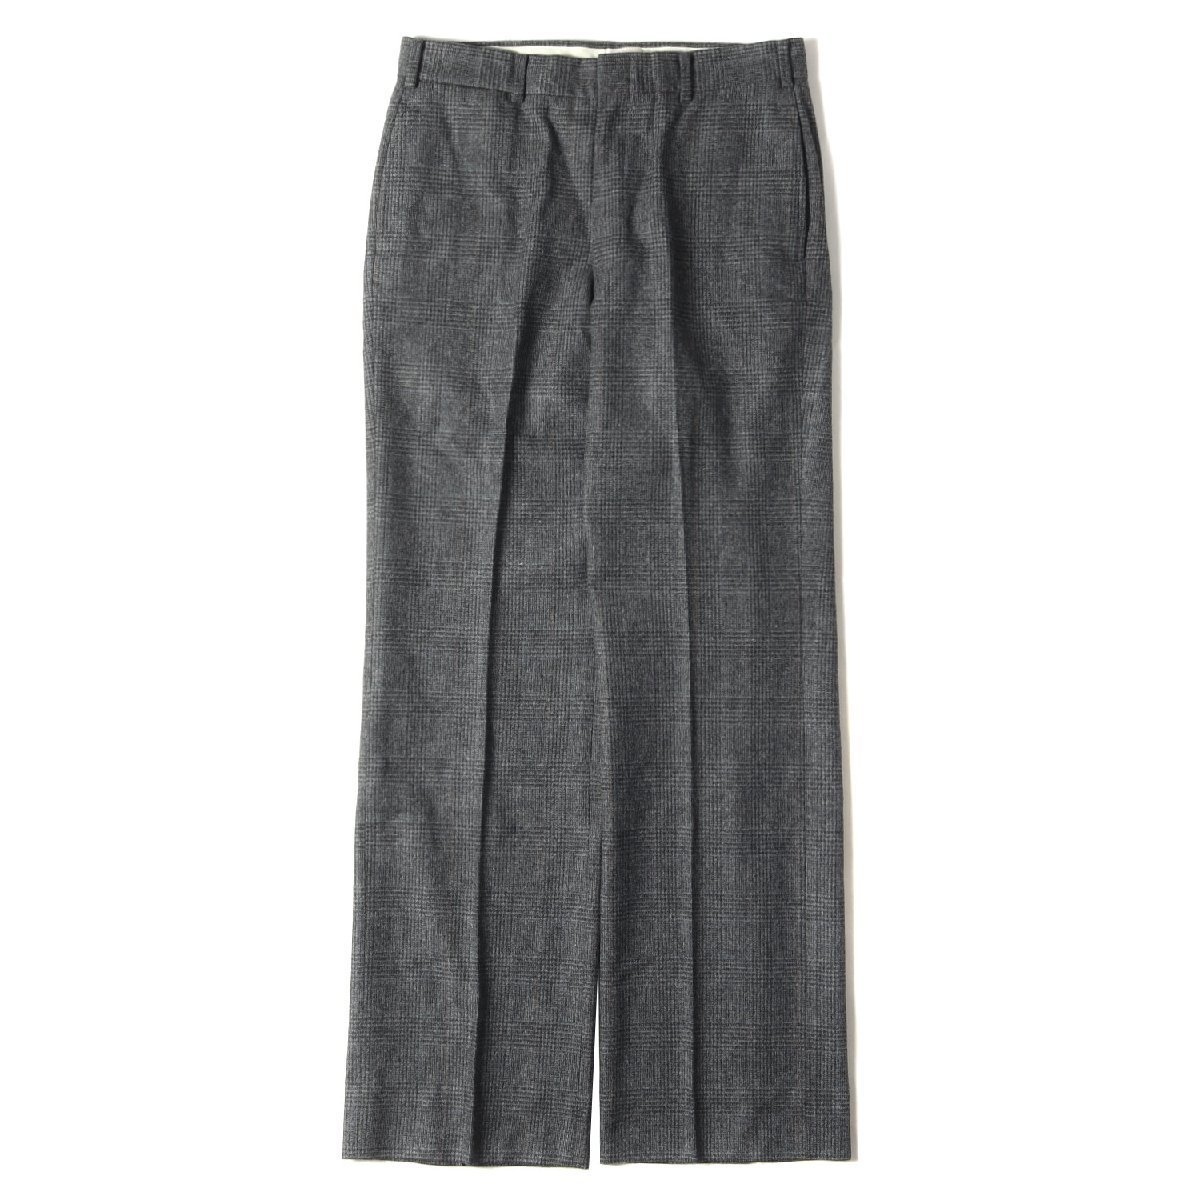 NEWYORKER ニューヨーカー パンツ サイズ:W82 90s グレンチェック テーパード スラックスパンツ kirkburn グレー 日本製 ブランド